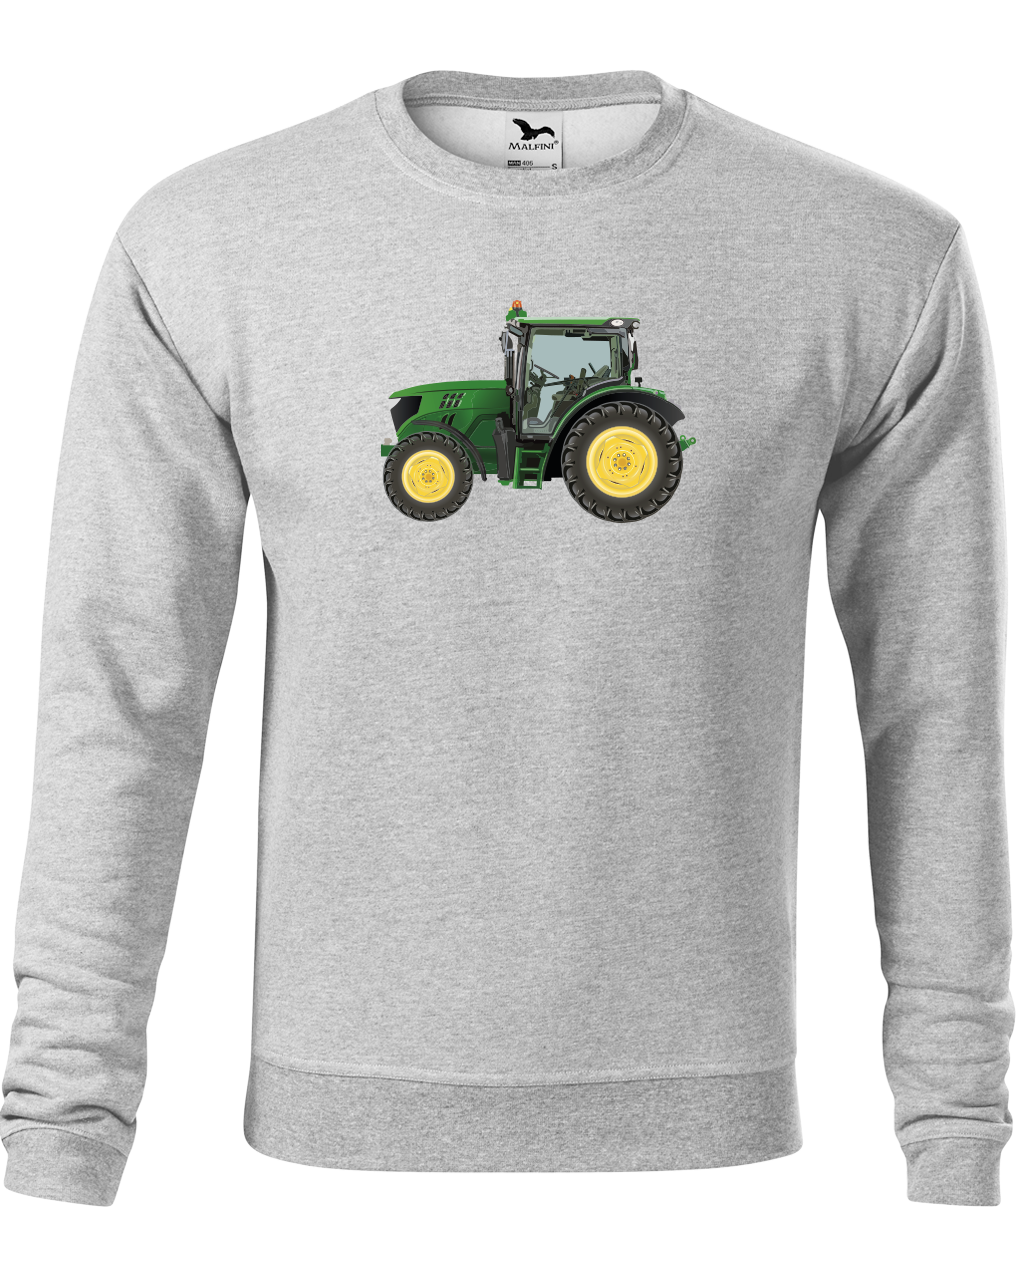 Mikina s traktorem - Zelený traktor Velikost: L, Barva: Světle šedý melír